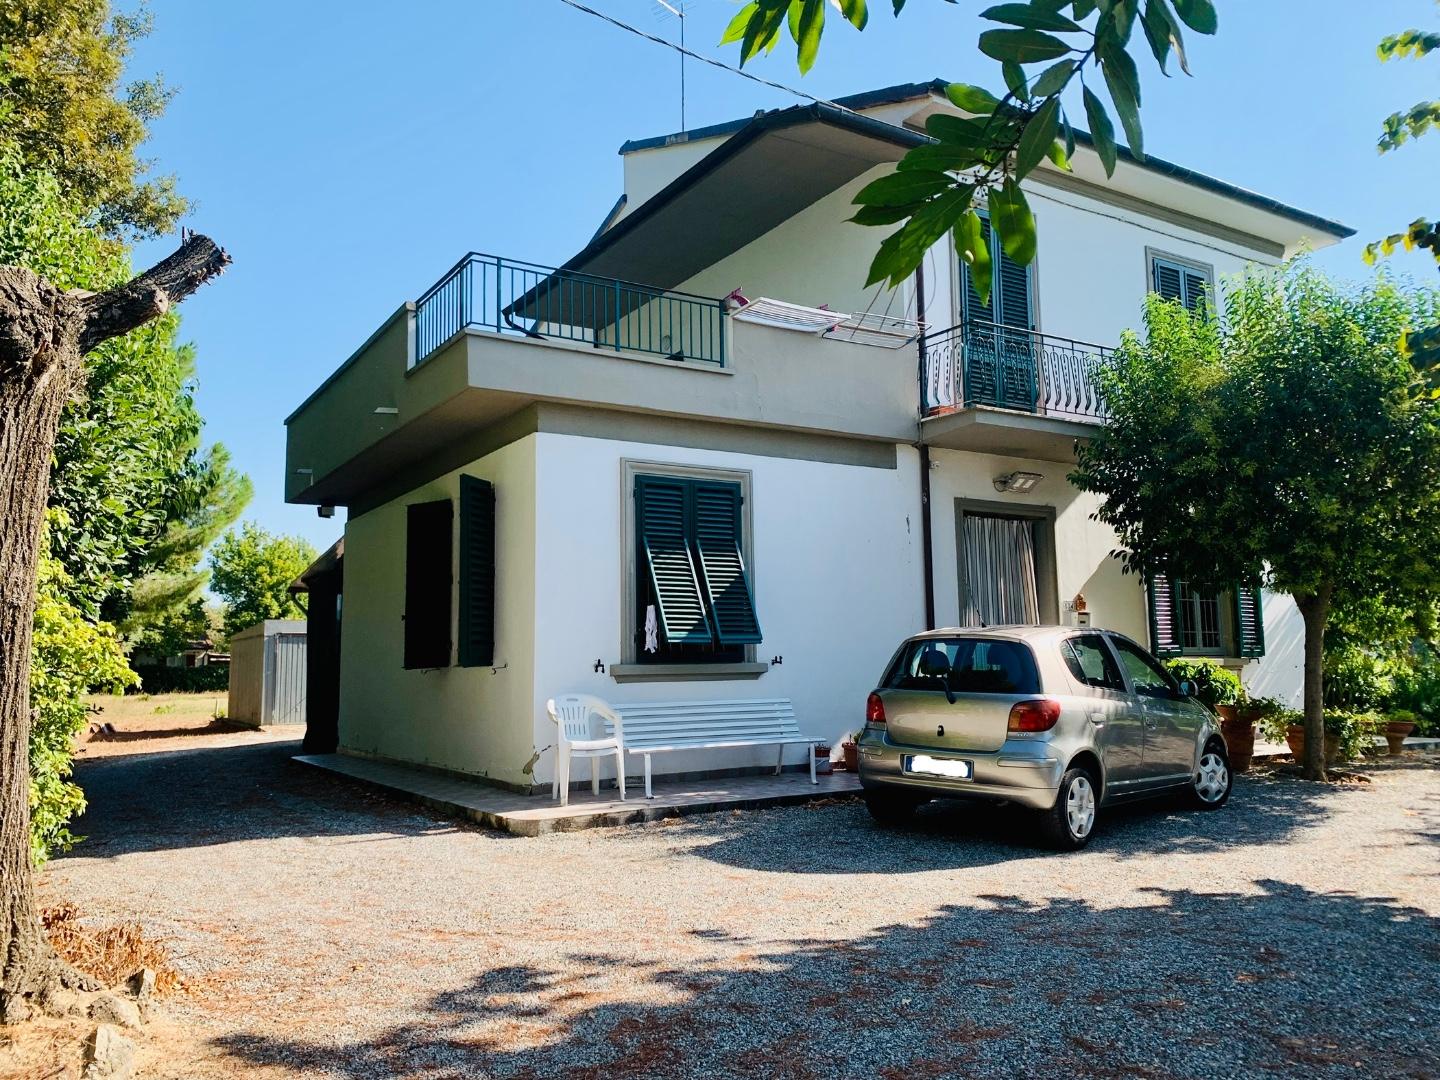 Villa in vendita a Empoli, 6 locali, prezzo € 420.000 | PortaleAgenzieImmobiliari.it